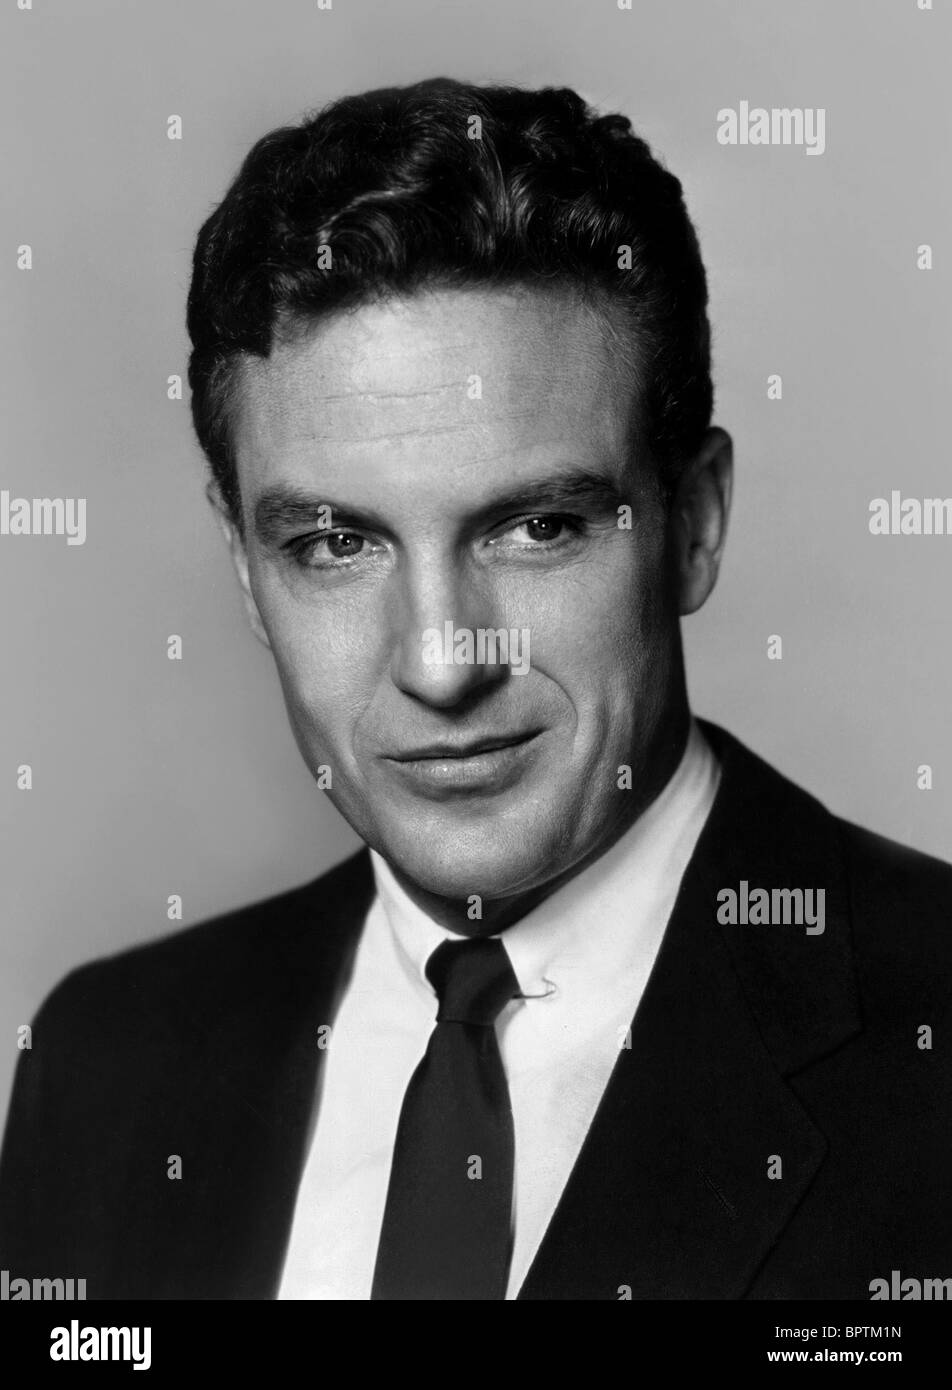 ROBERT STACK ACTOR (1963) Stock Photo